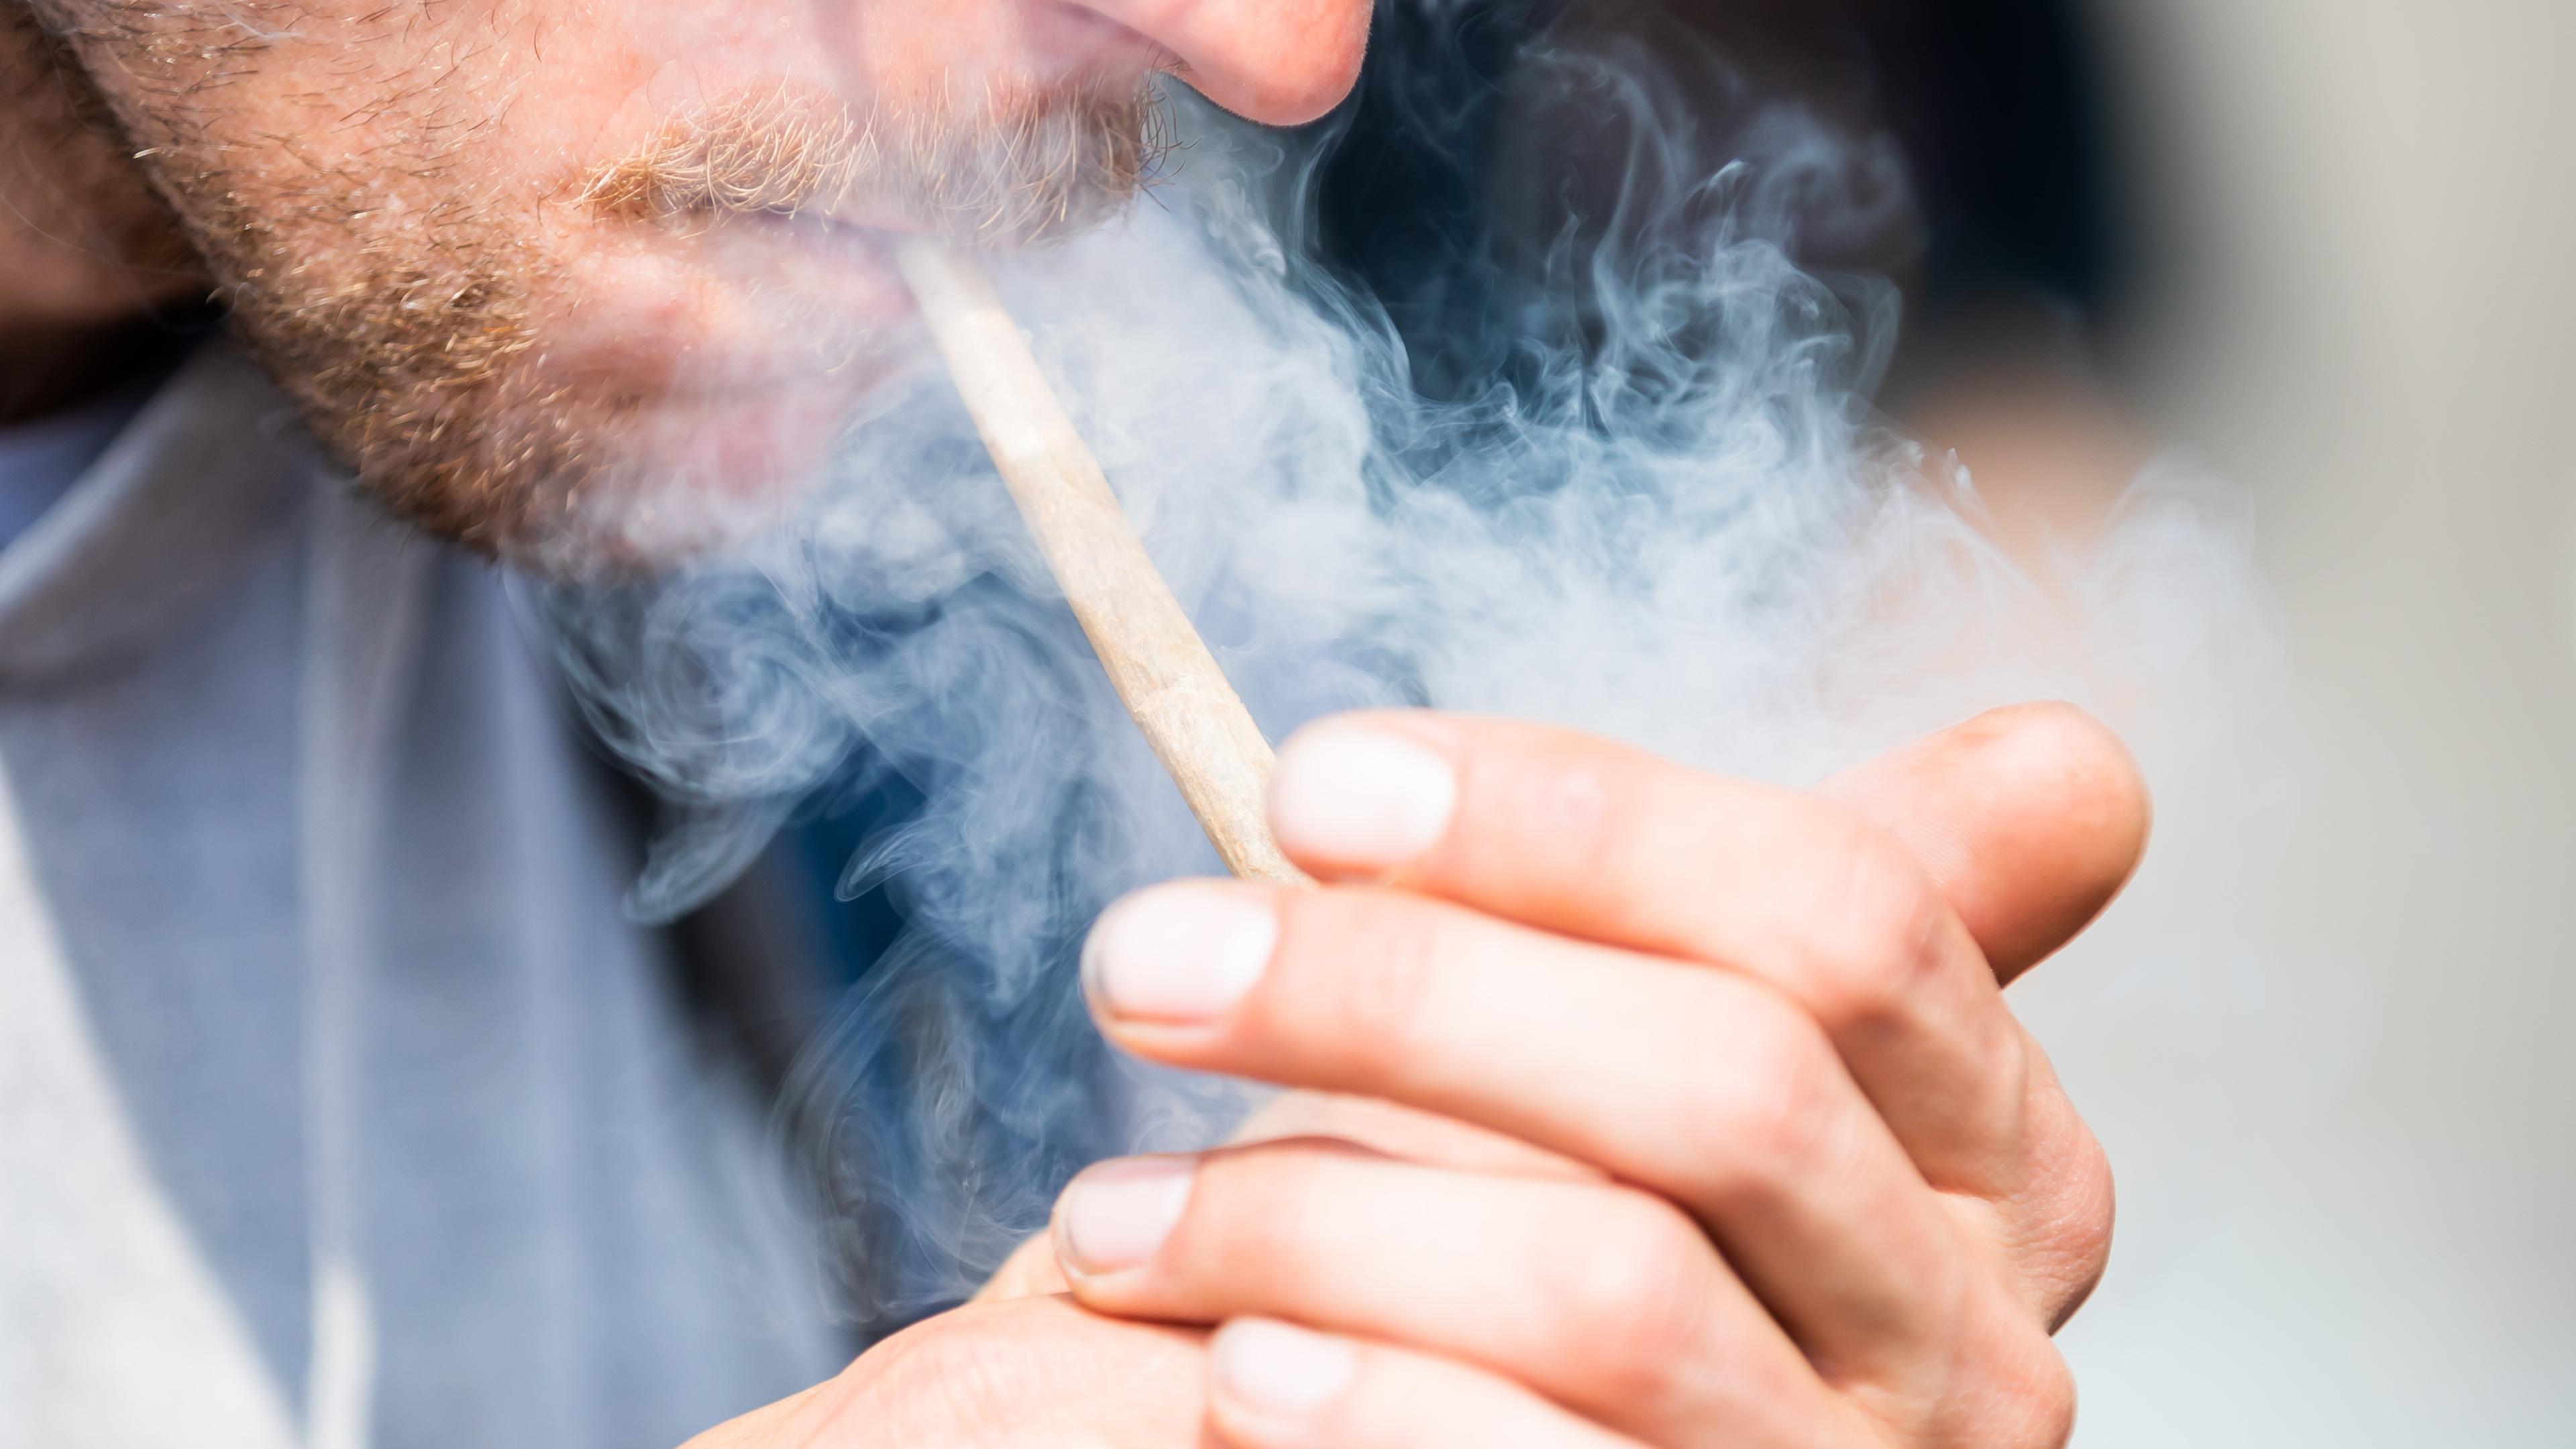 Das Bild zeigt einen Mann, der einen Joint raucht.